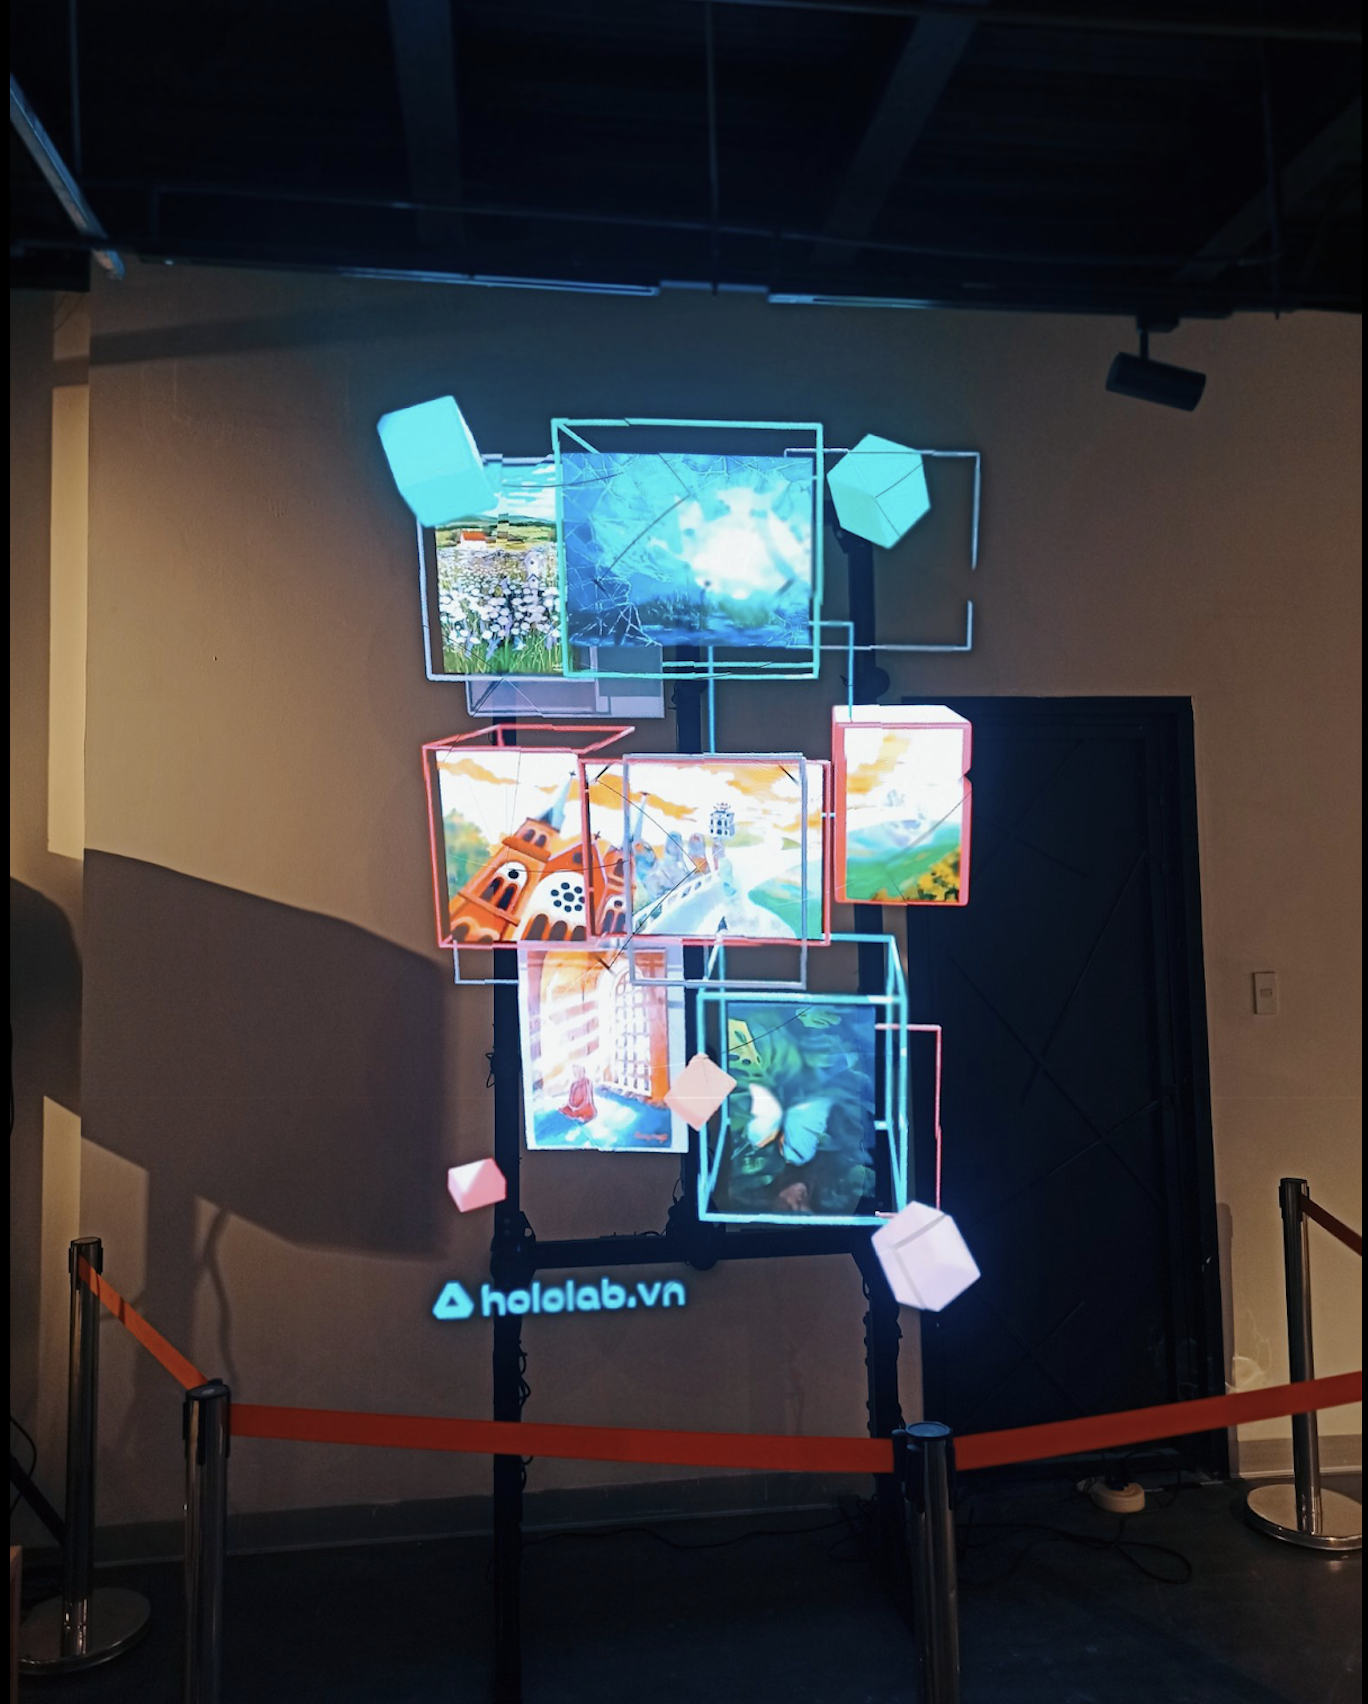 Hololab ứng dụng công nghệ Hologram 3D trong triển lãm Tìm về 2022 với chủ đề “Những sợi chỉ muôn màu”.